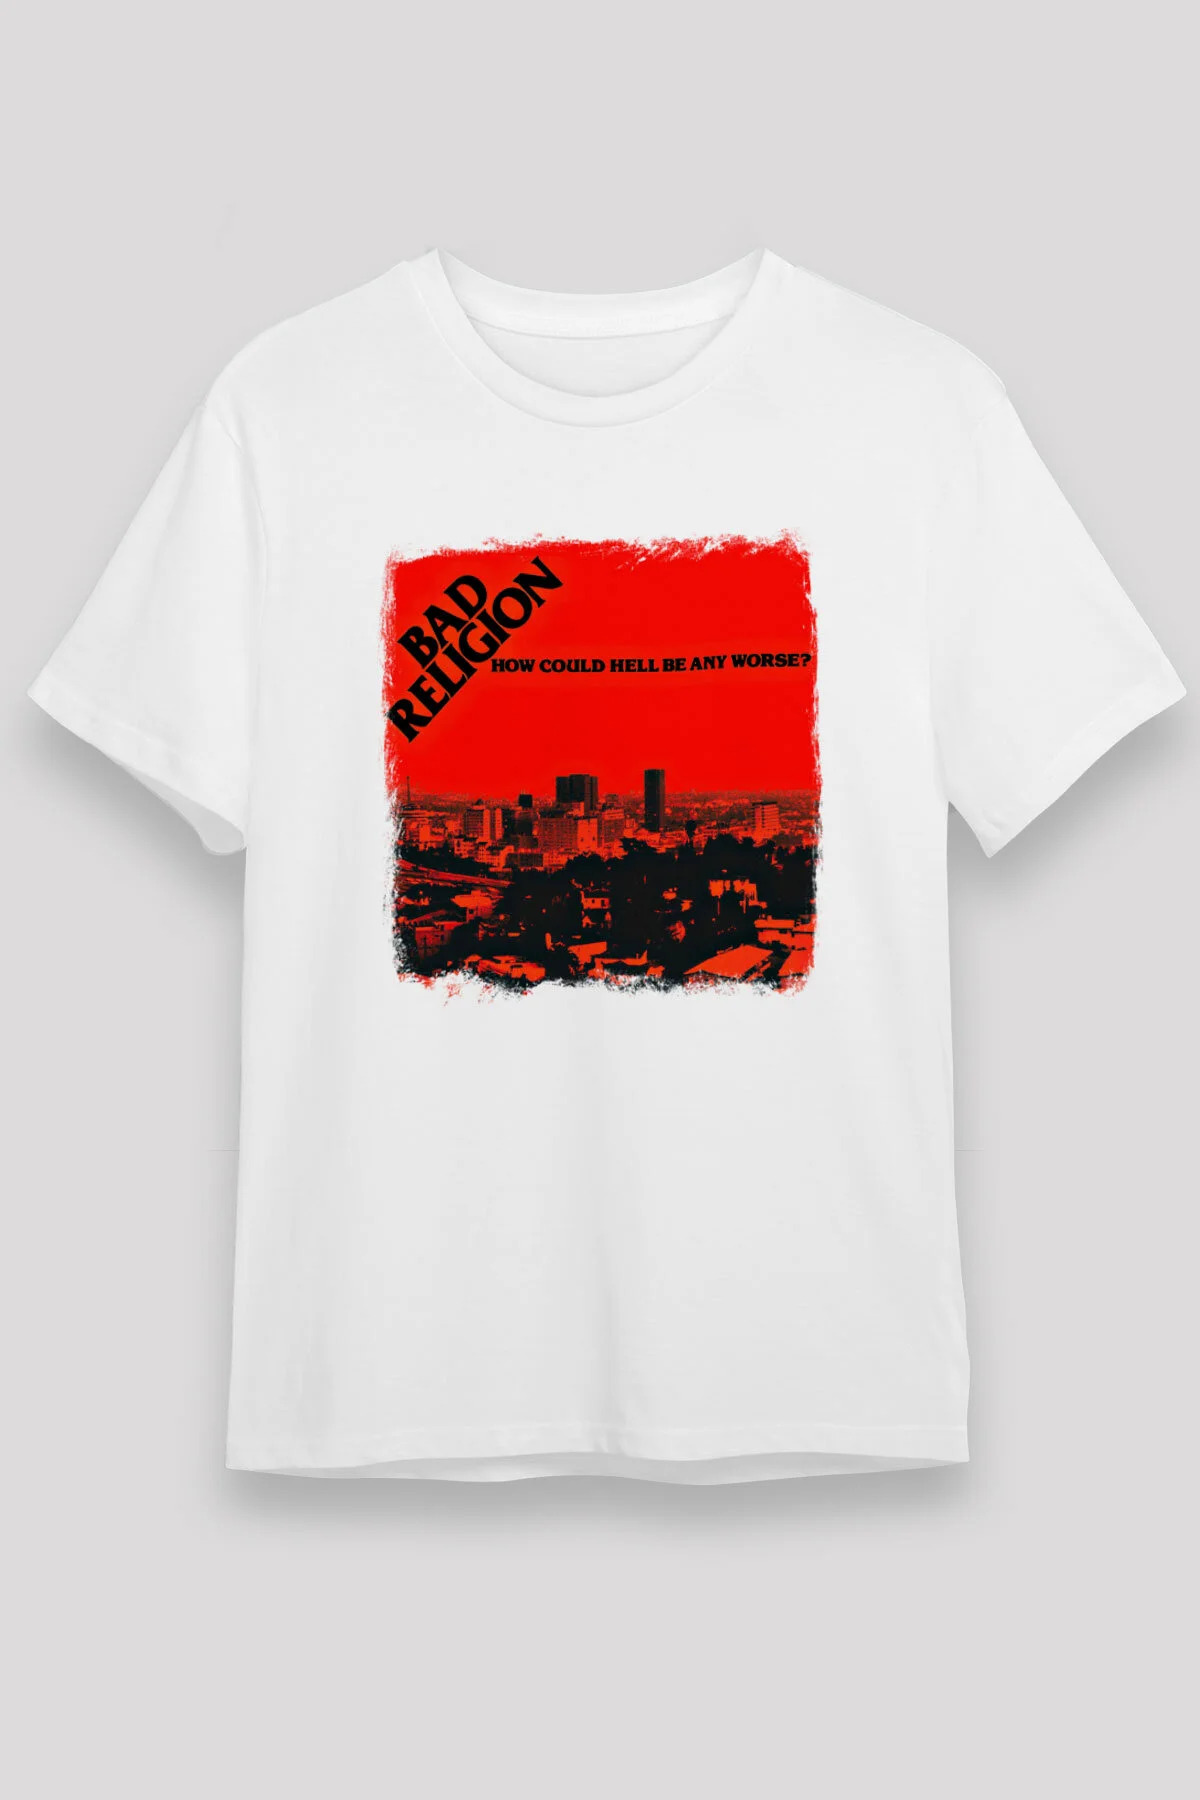 Bad Religion ,Music Band ,Unisex Tshirt 20/